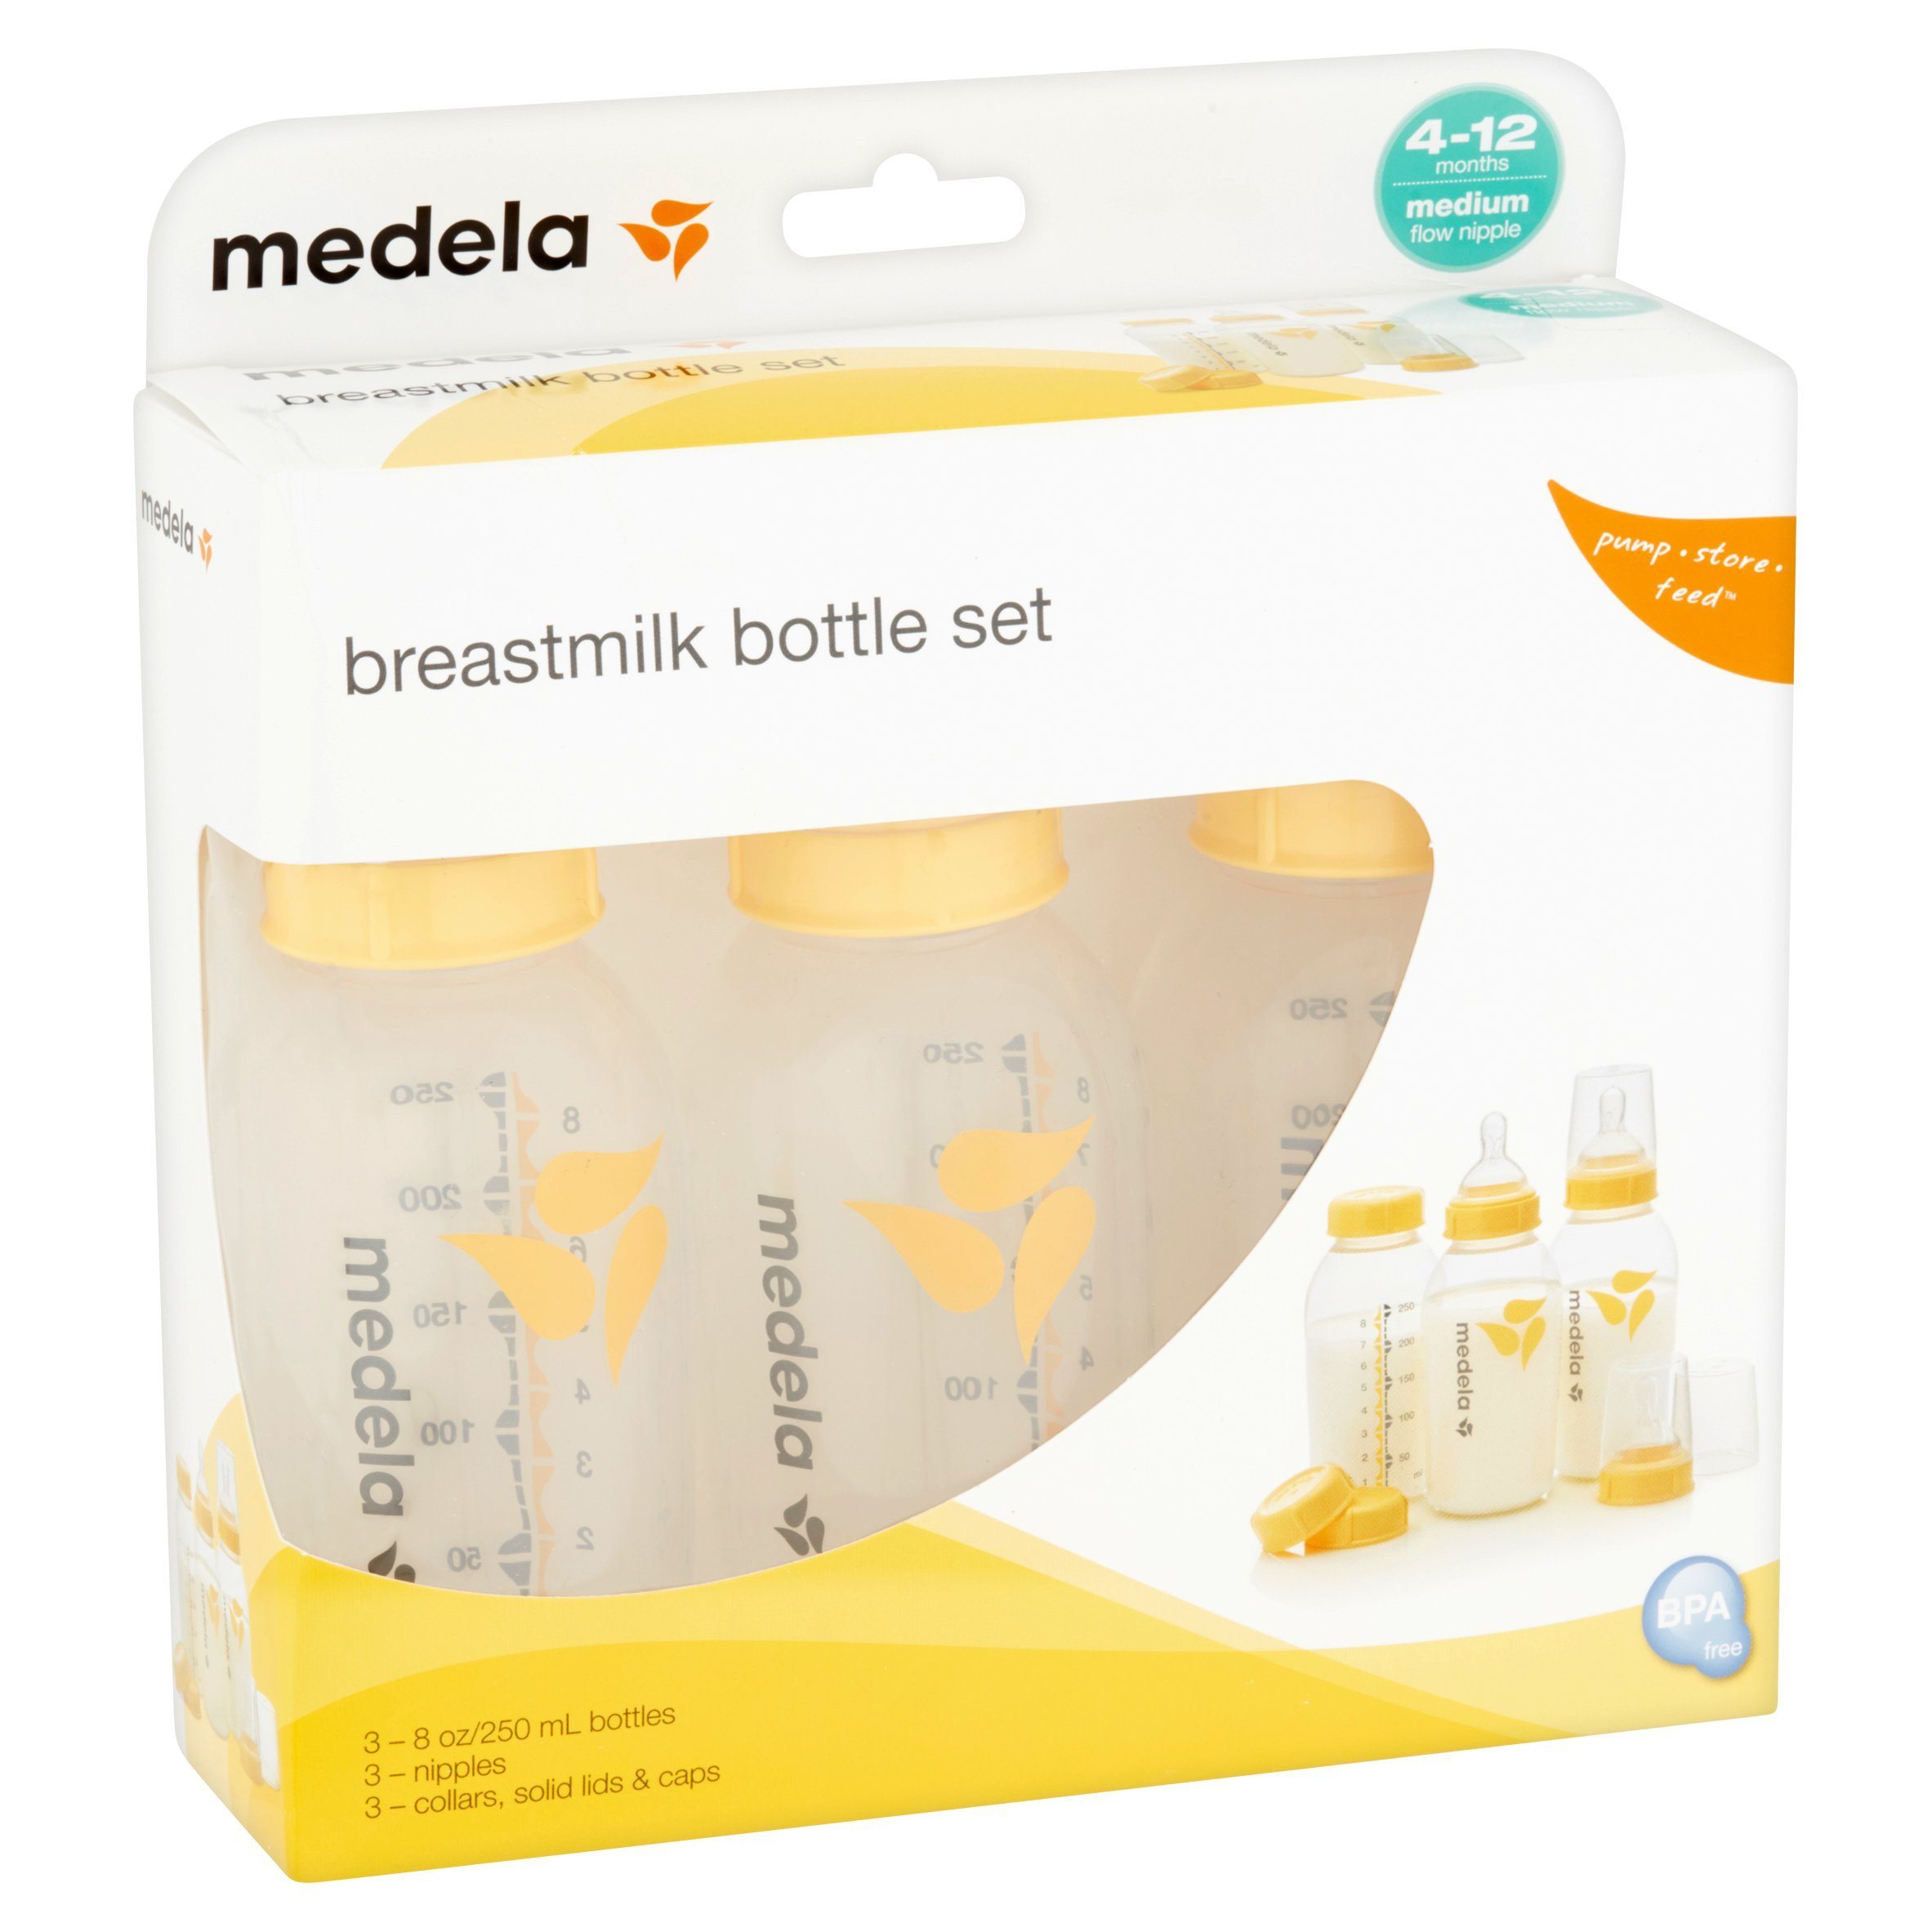 https://www.saveritemedical.com/cdn/shop/products/medelar-breastmilk-feeding-storage-set-8-oz-medela-850943.jpg?v=1631419349&width=2365